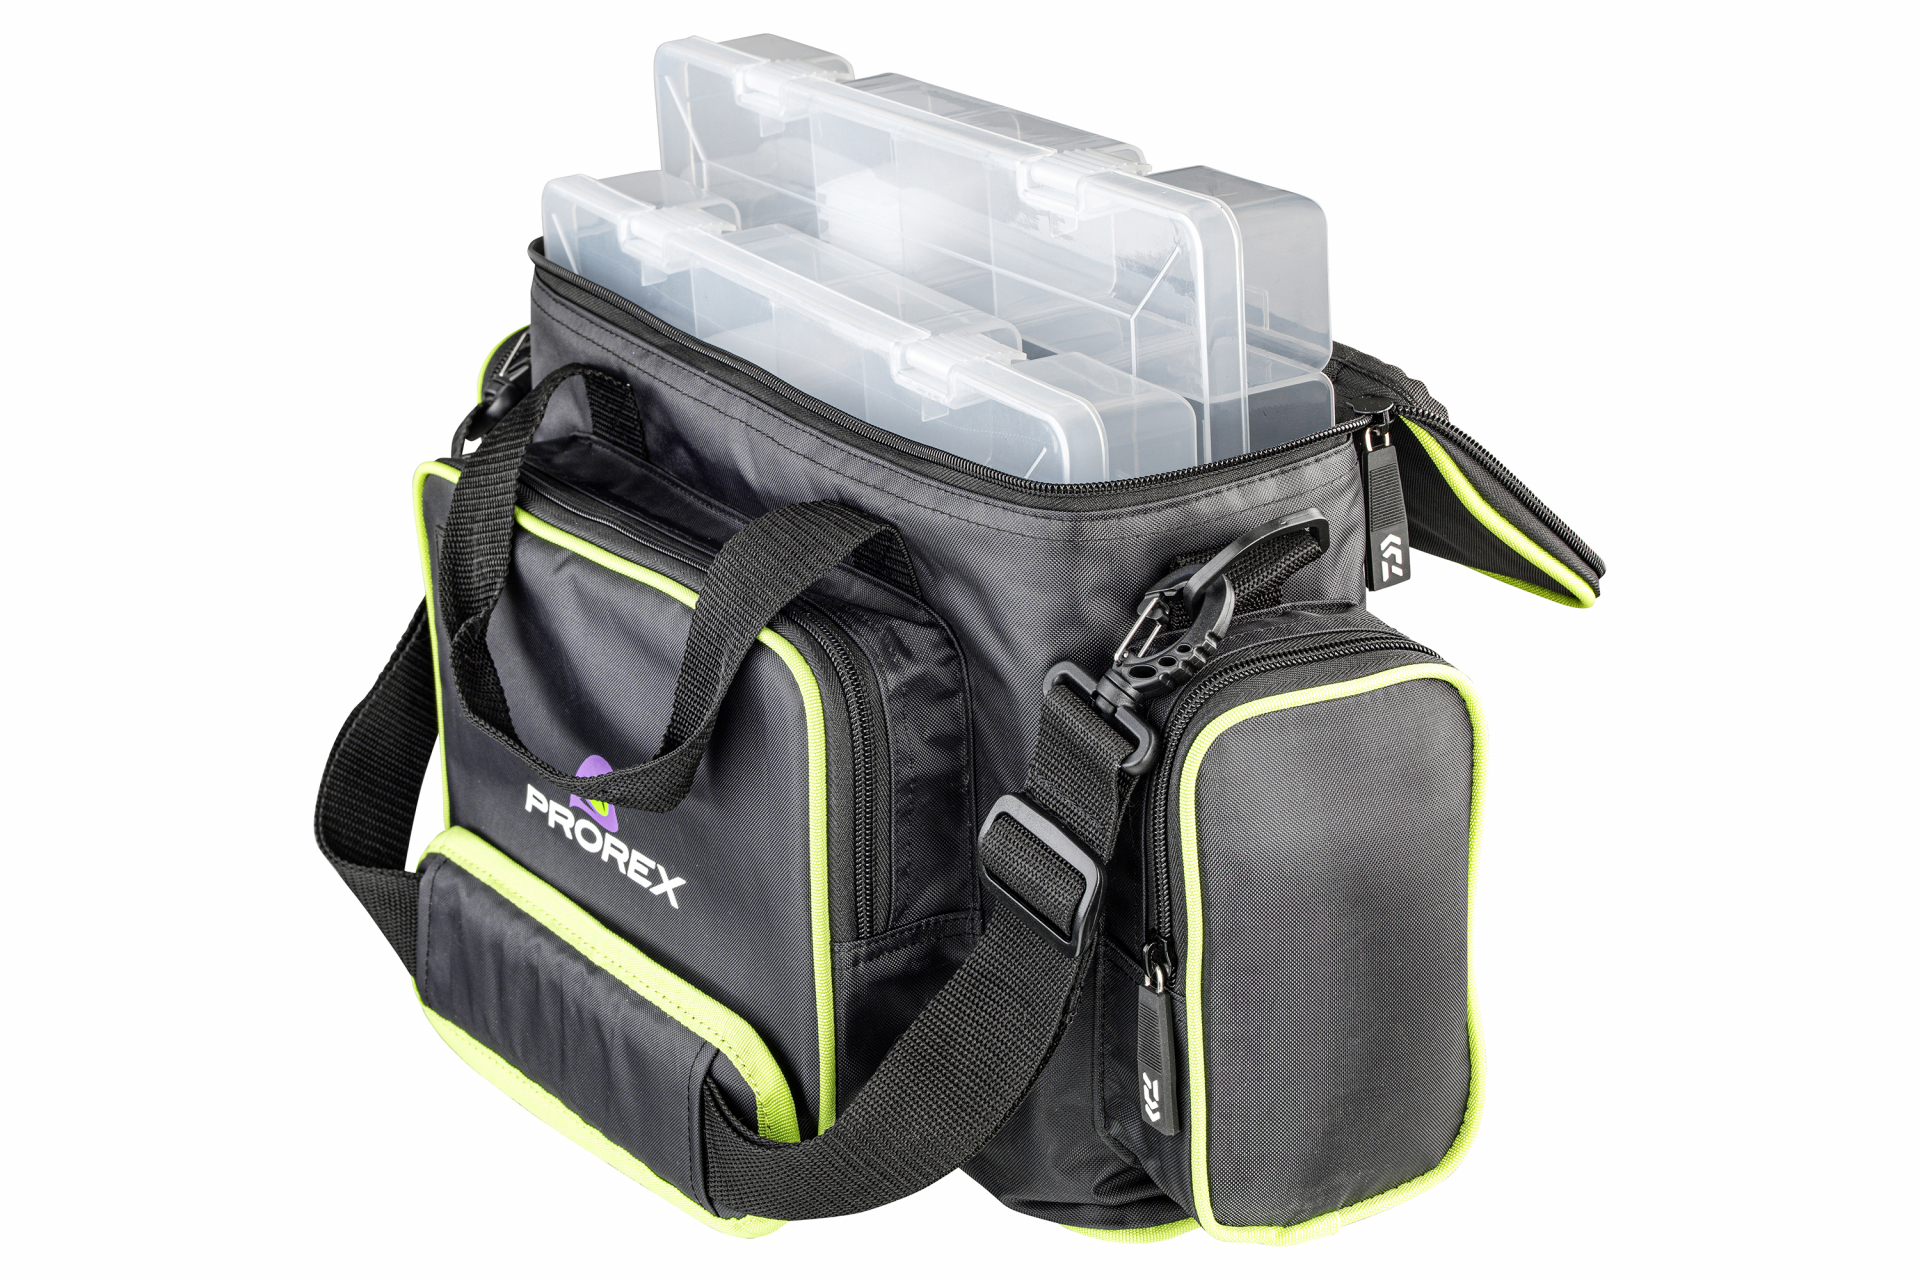 Prorex Tackle Bag <span>| Műcsalis táska | M-es méret</span>